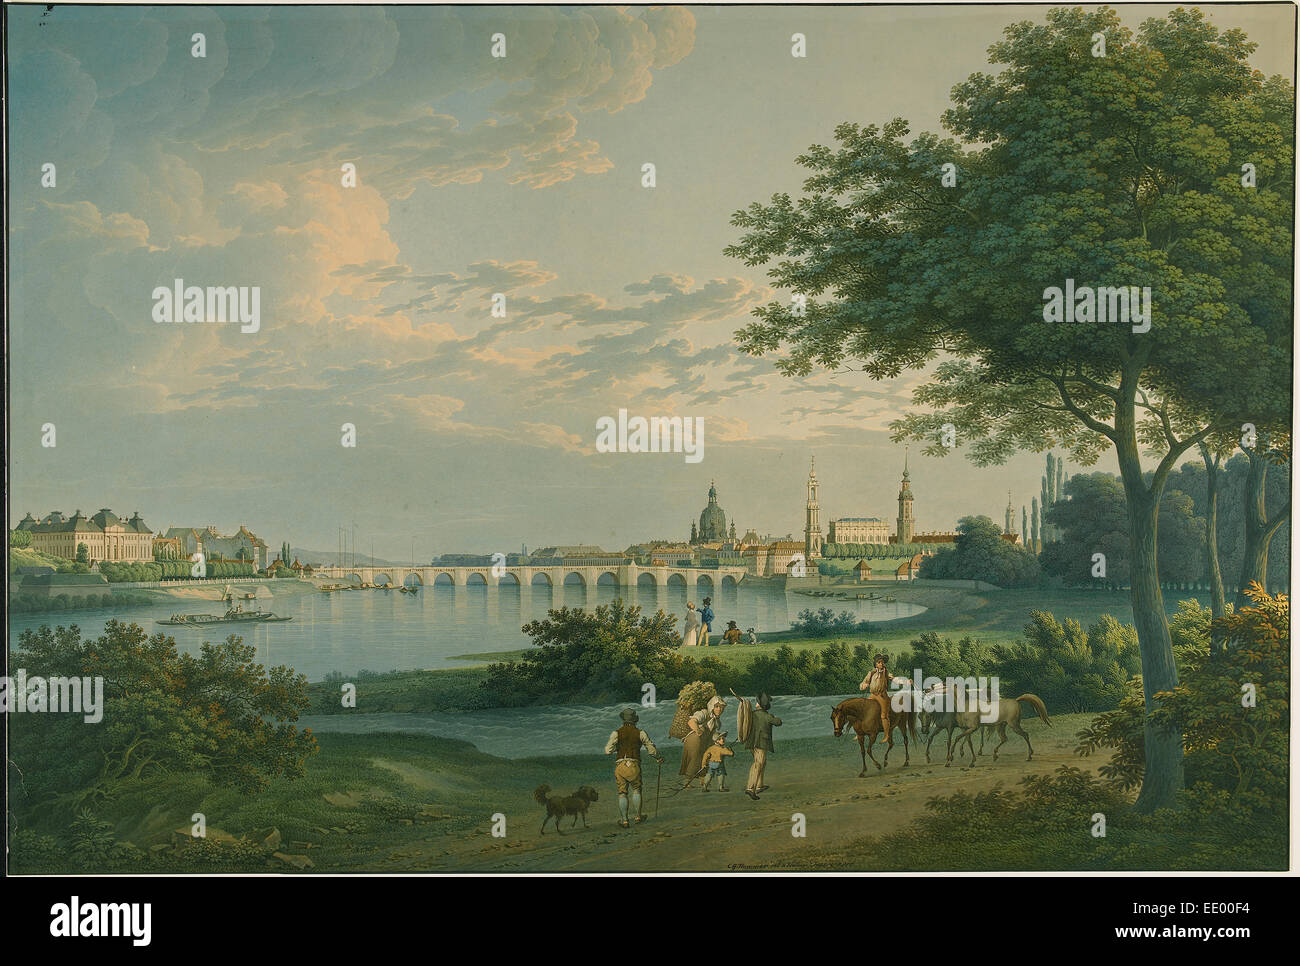 Vue de Dresde ; Christian Gottlieb Marteau, Allemand, 1779 - 1864, l'Allemagne, Europe ; 1810 ; Aquarelle sur mine Banque D'Images